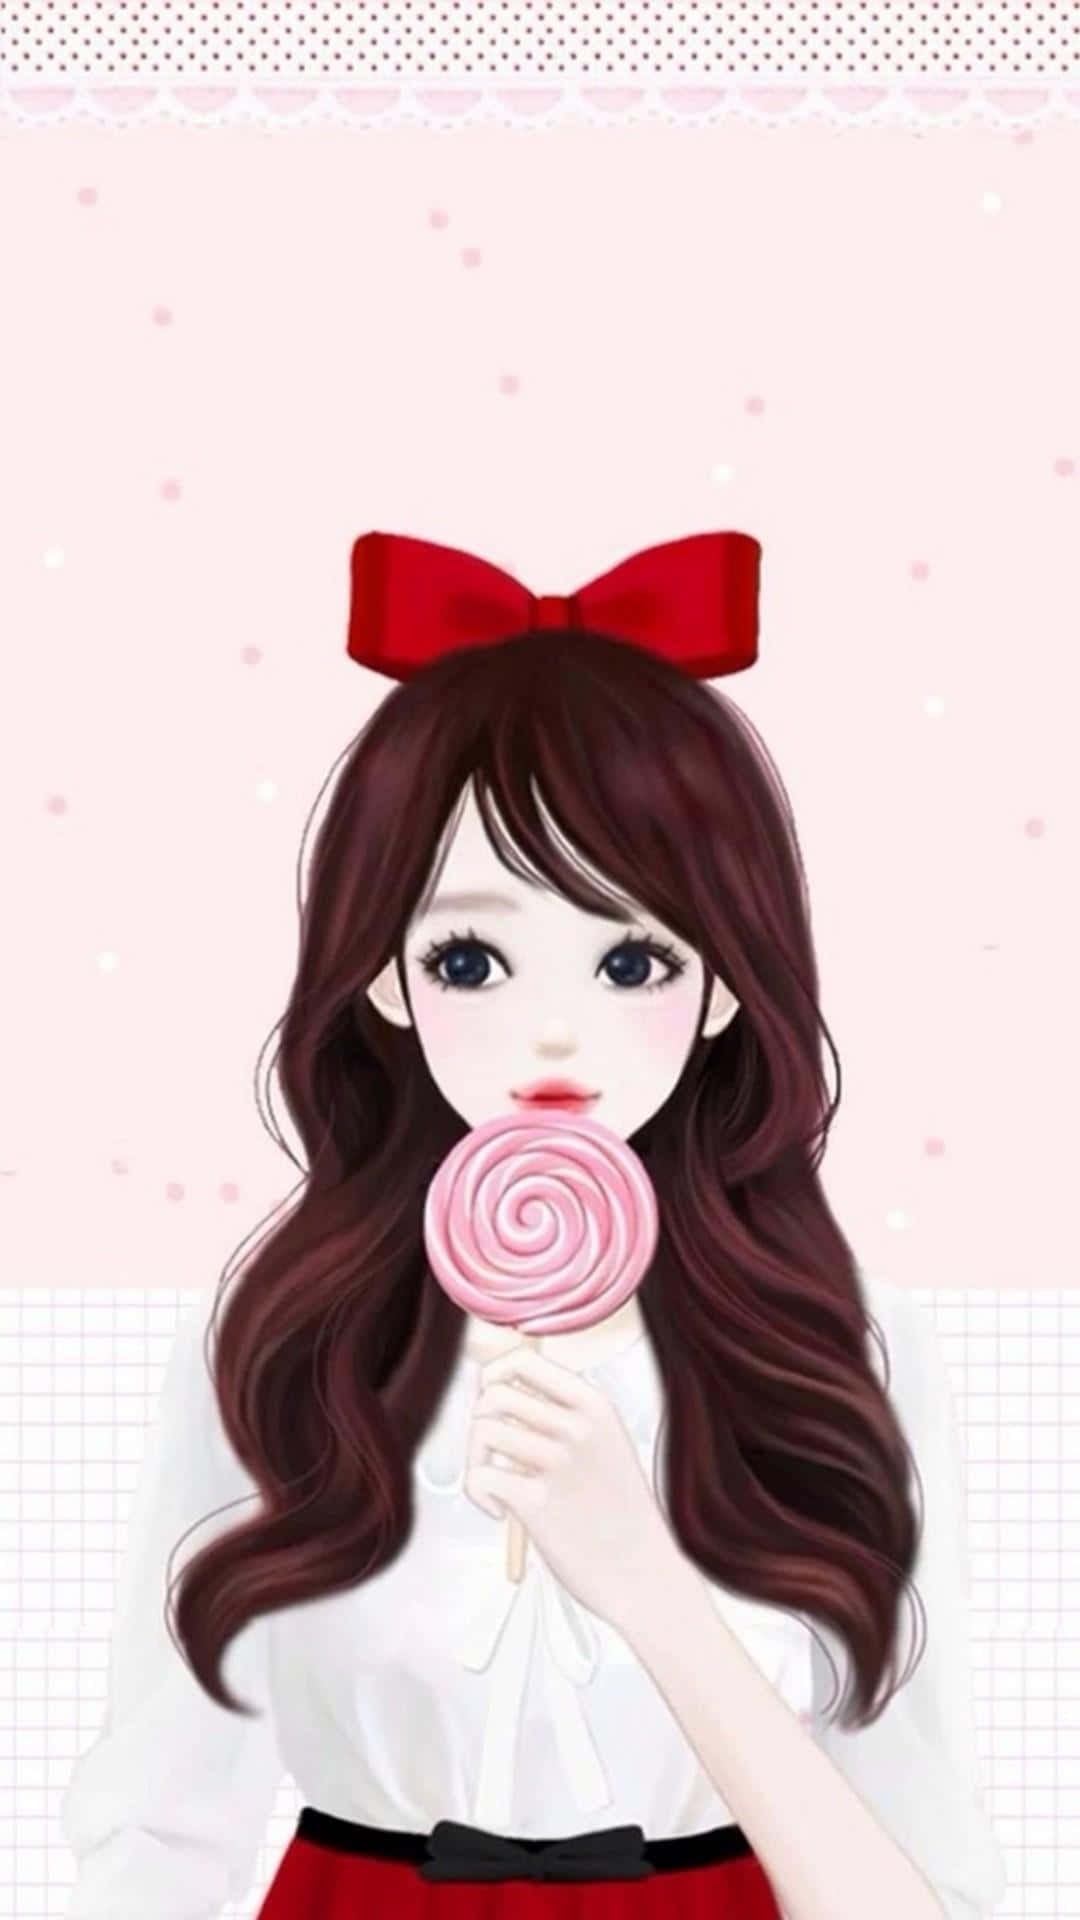 Korean Anime Girl Holding Lollipop Background